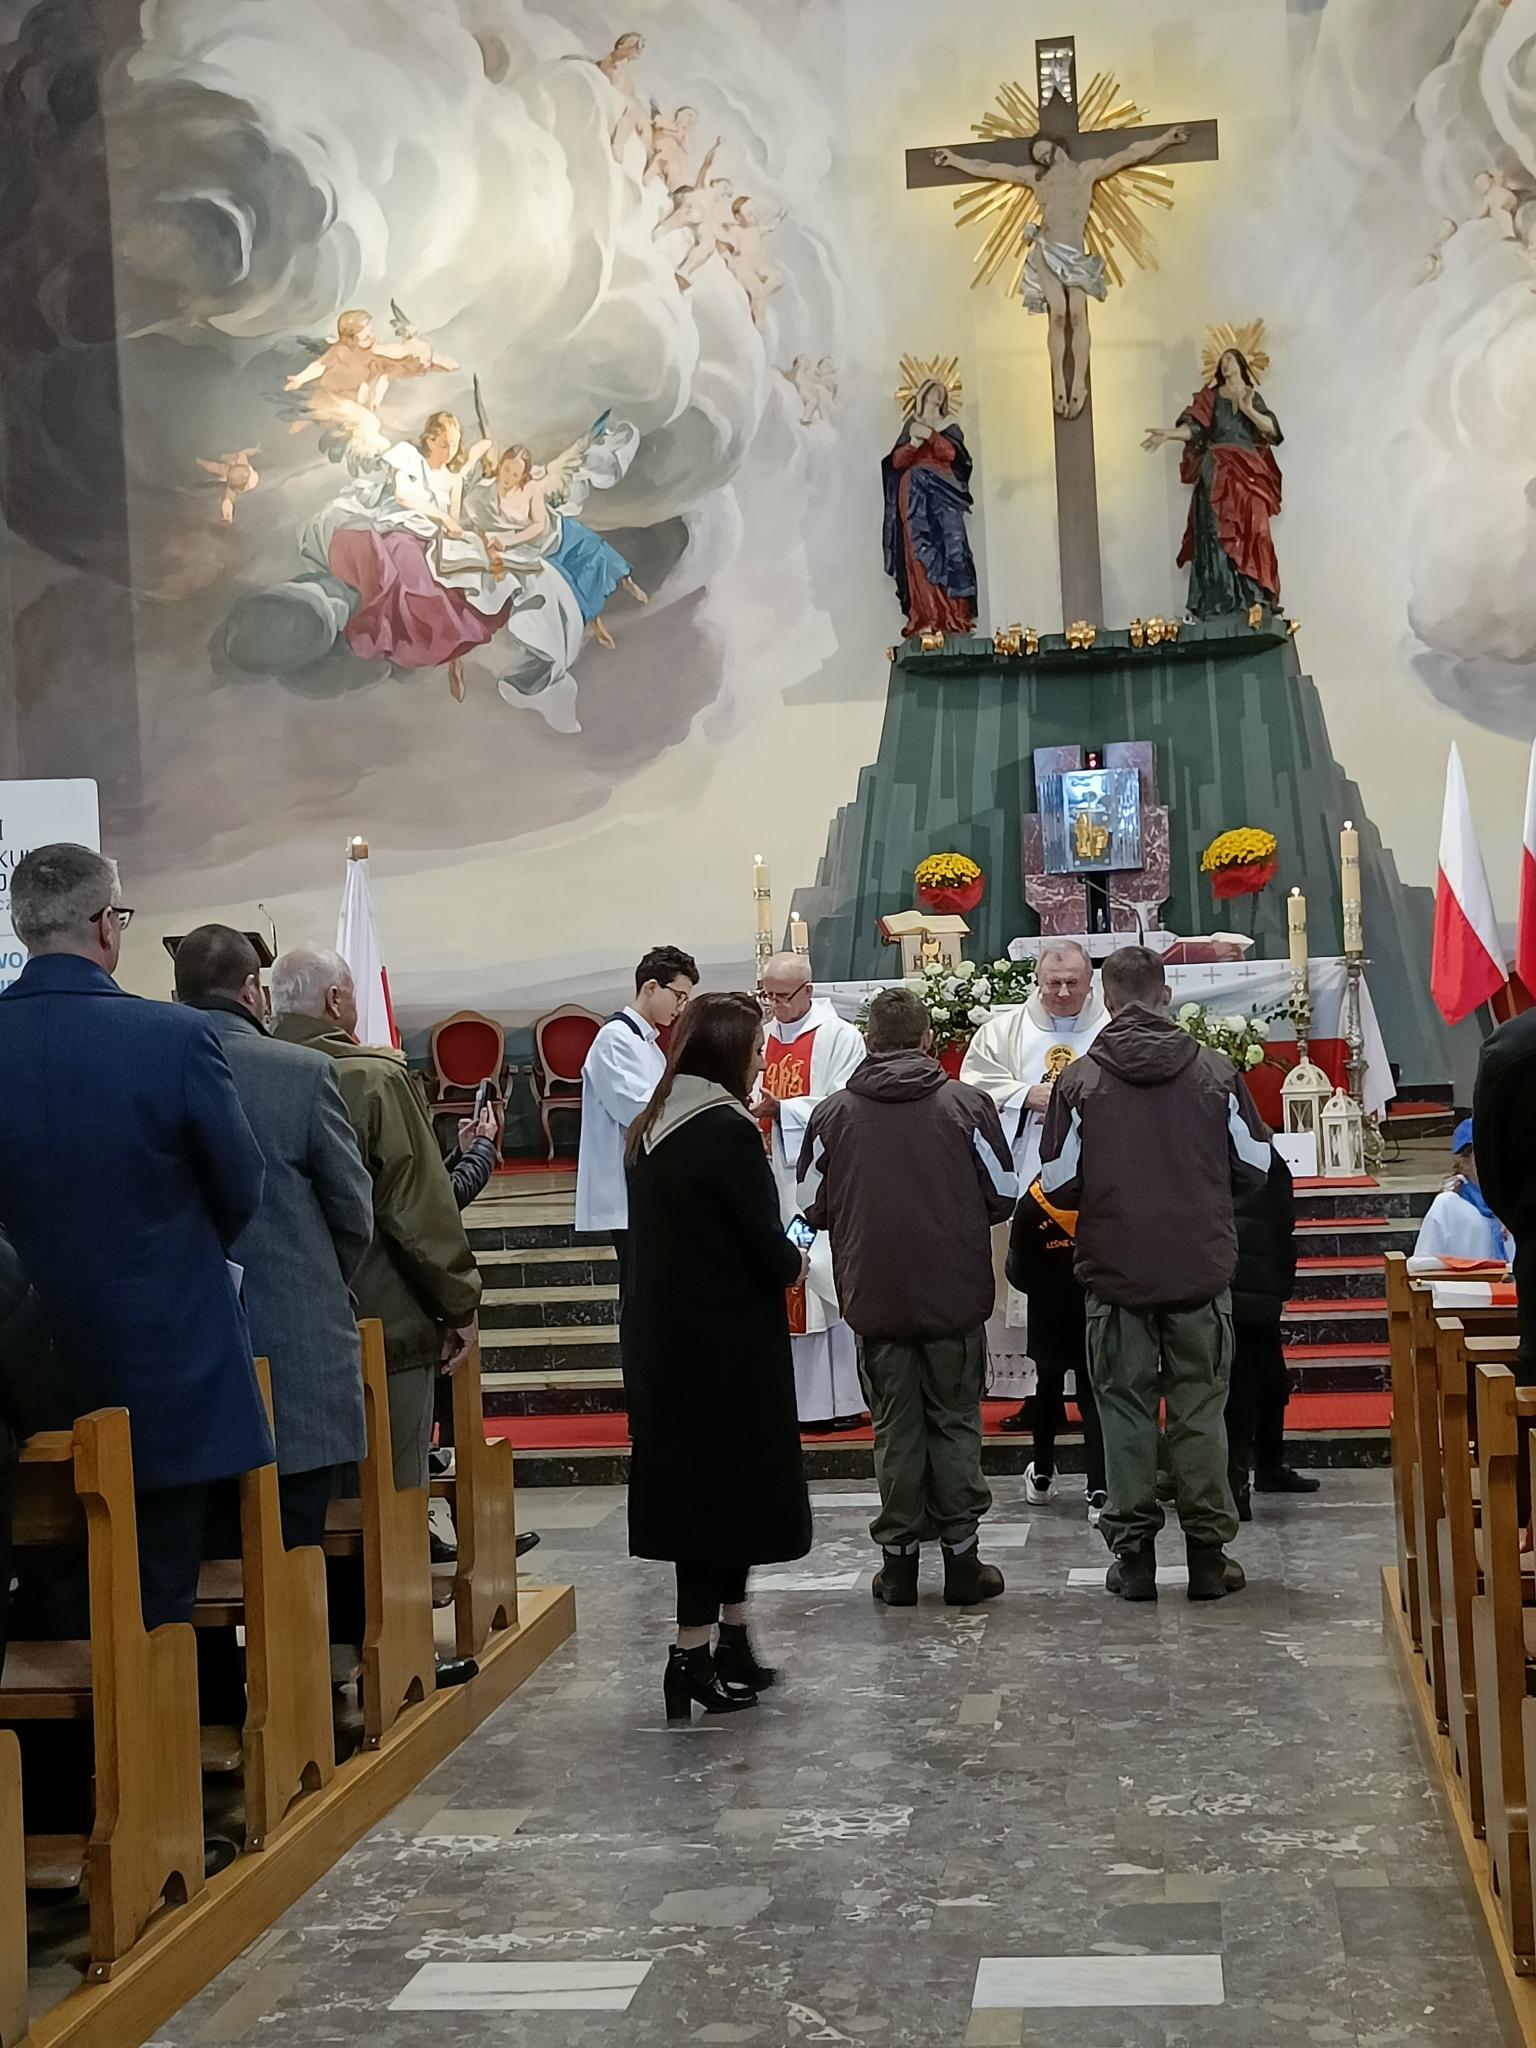 Narodowe Święto Niepodległości | Wychowankowie MOW w procesji z darami podczas mszy w kościele - widok ogólny..jpg